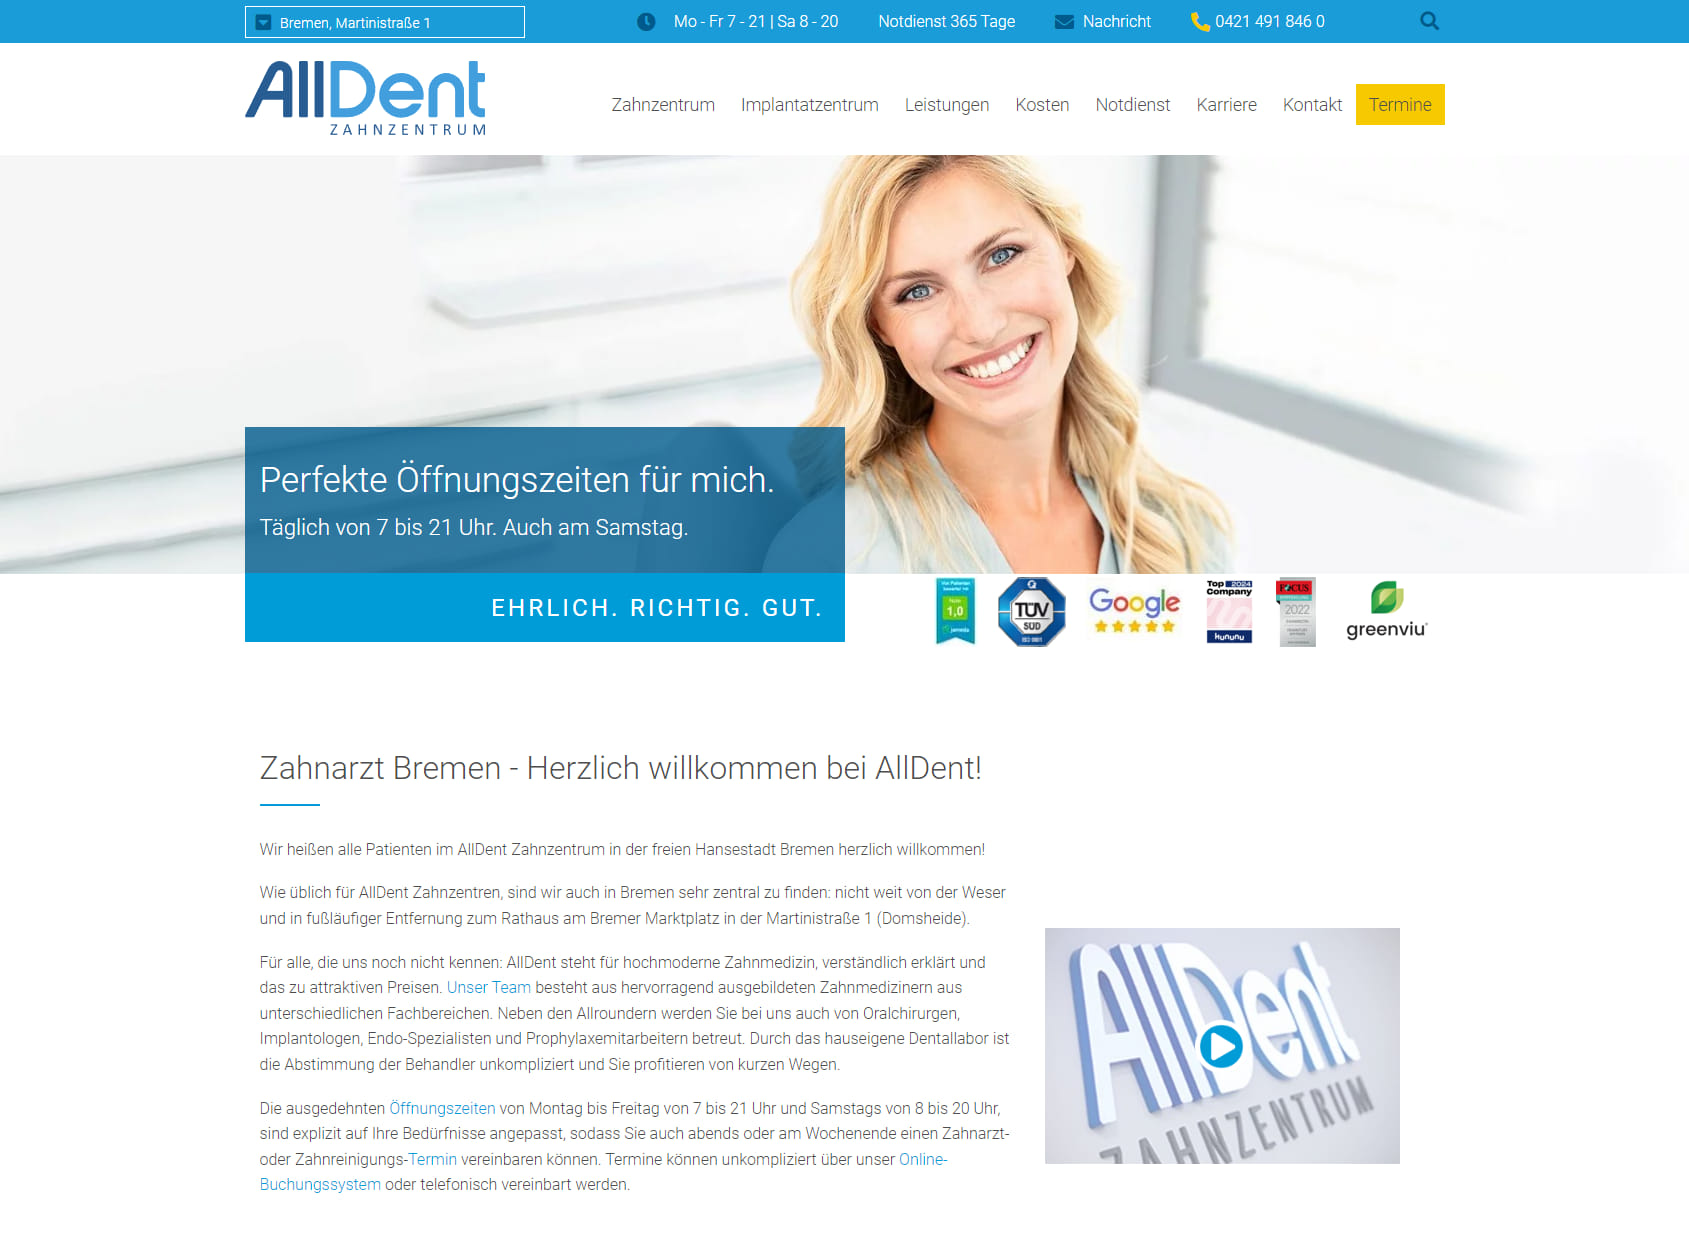 AllDent Zahnzentrum Bremen